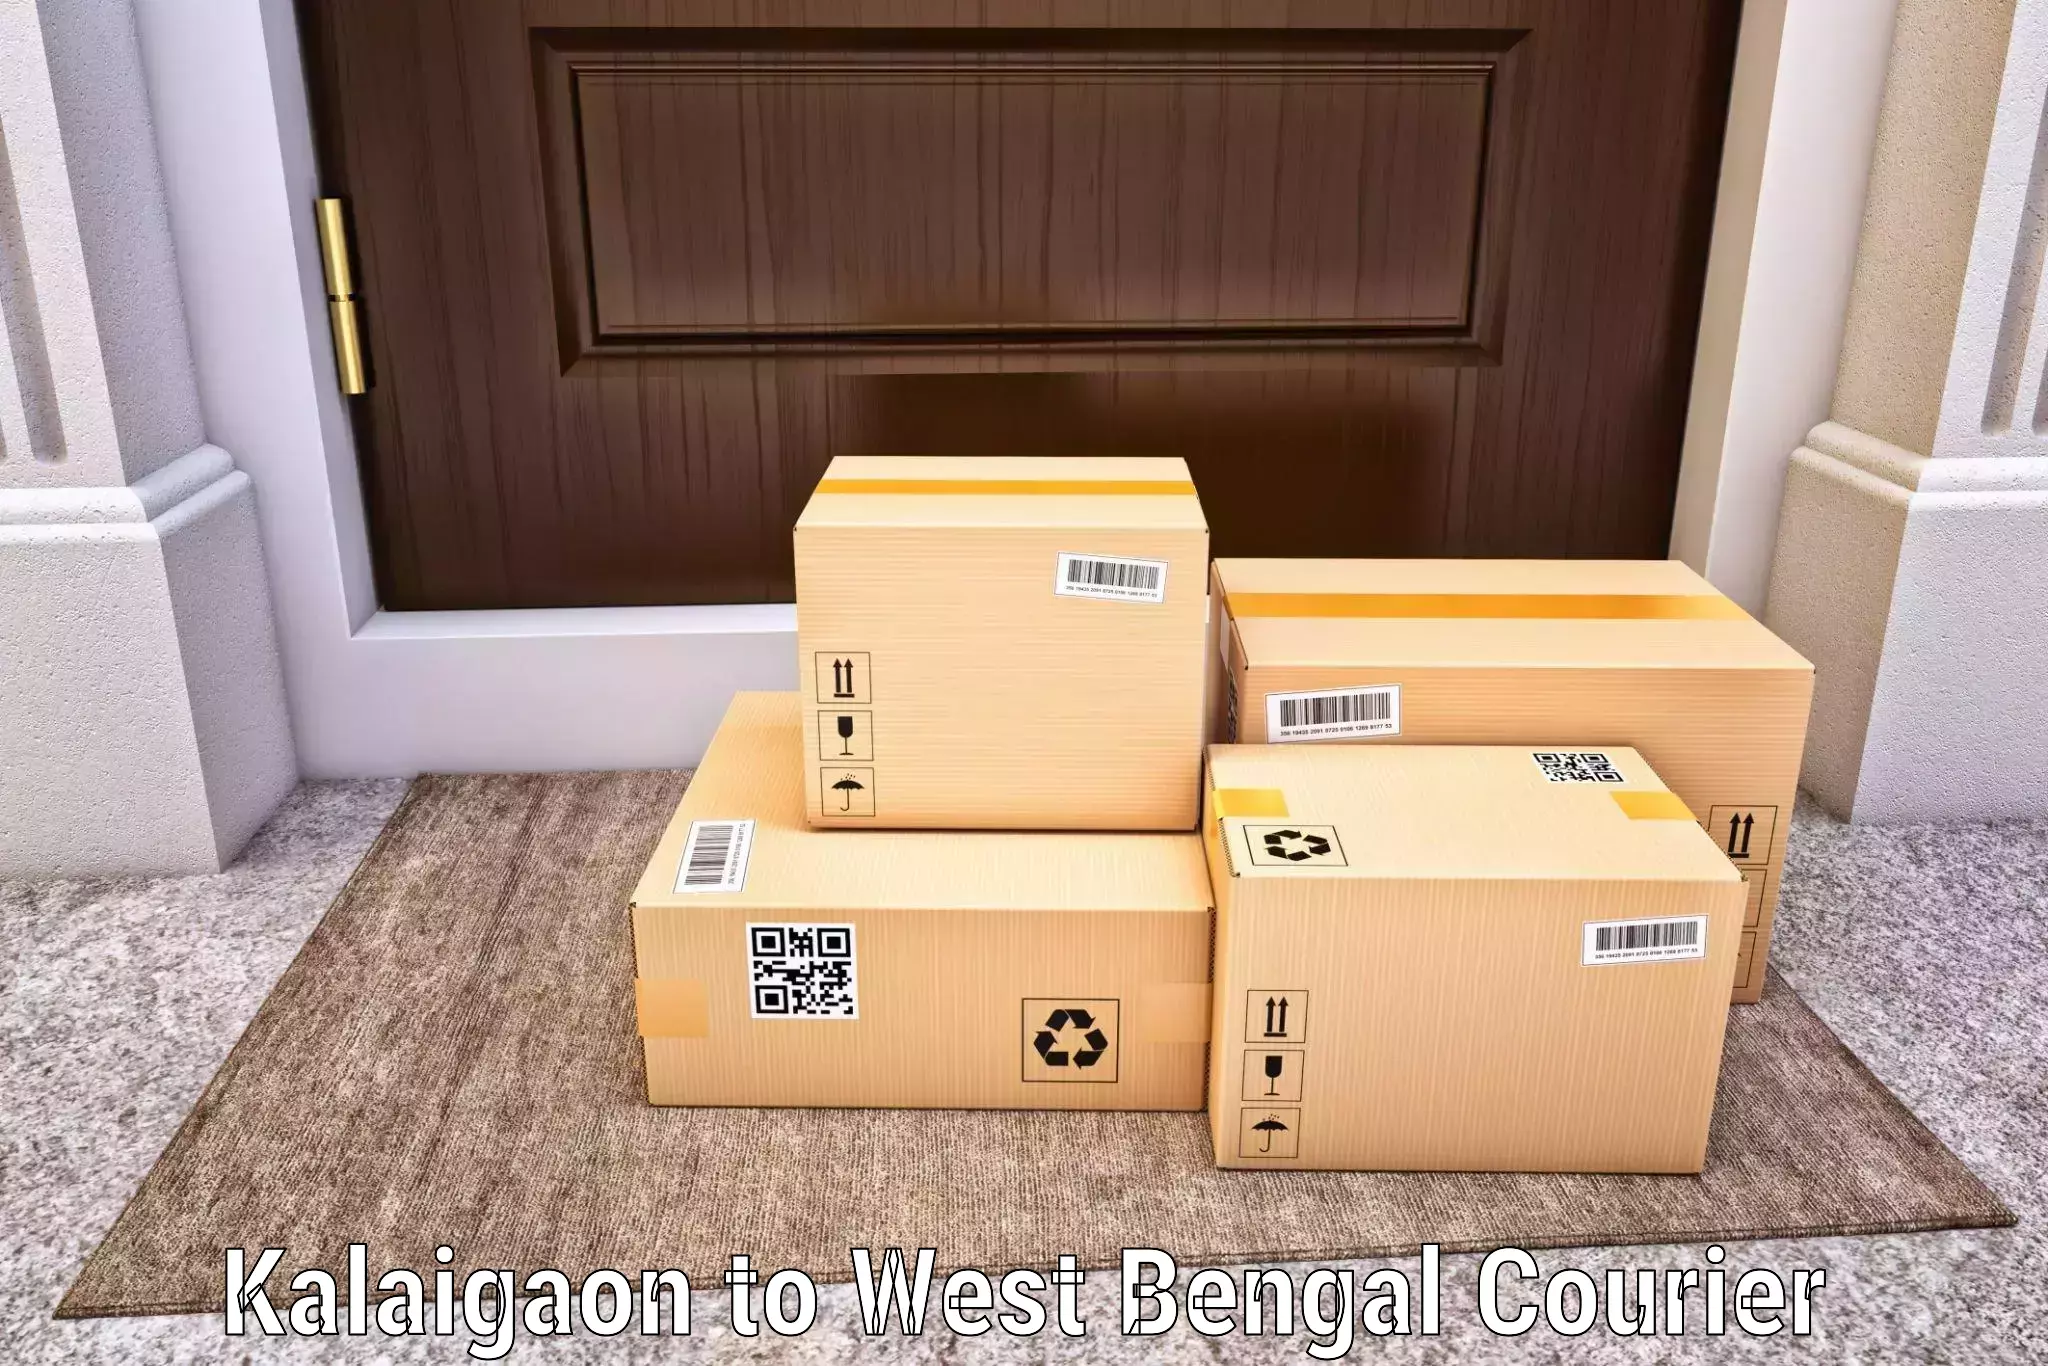 Logistics and distribution in Kalaigaon to Algarah